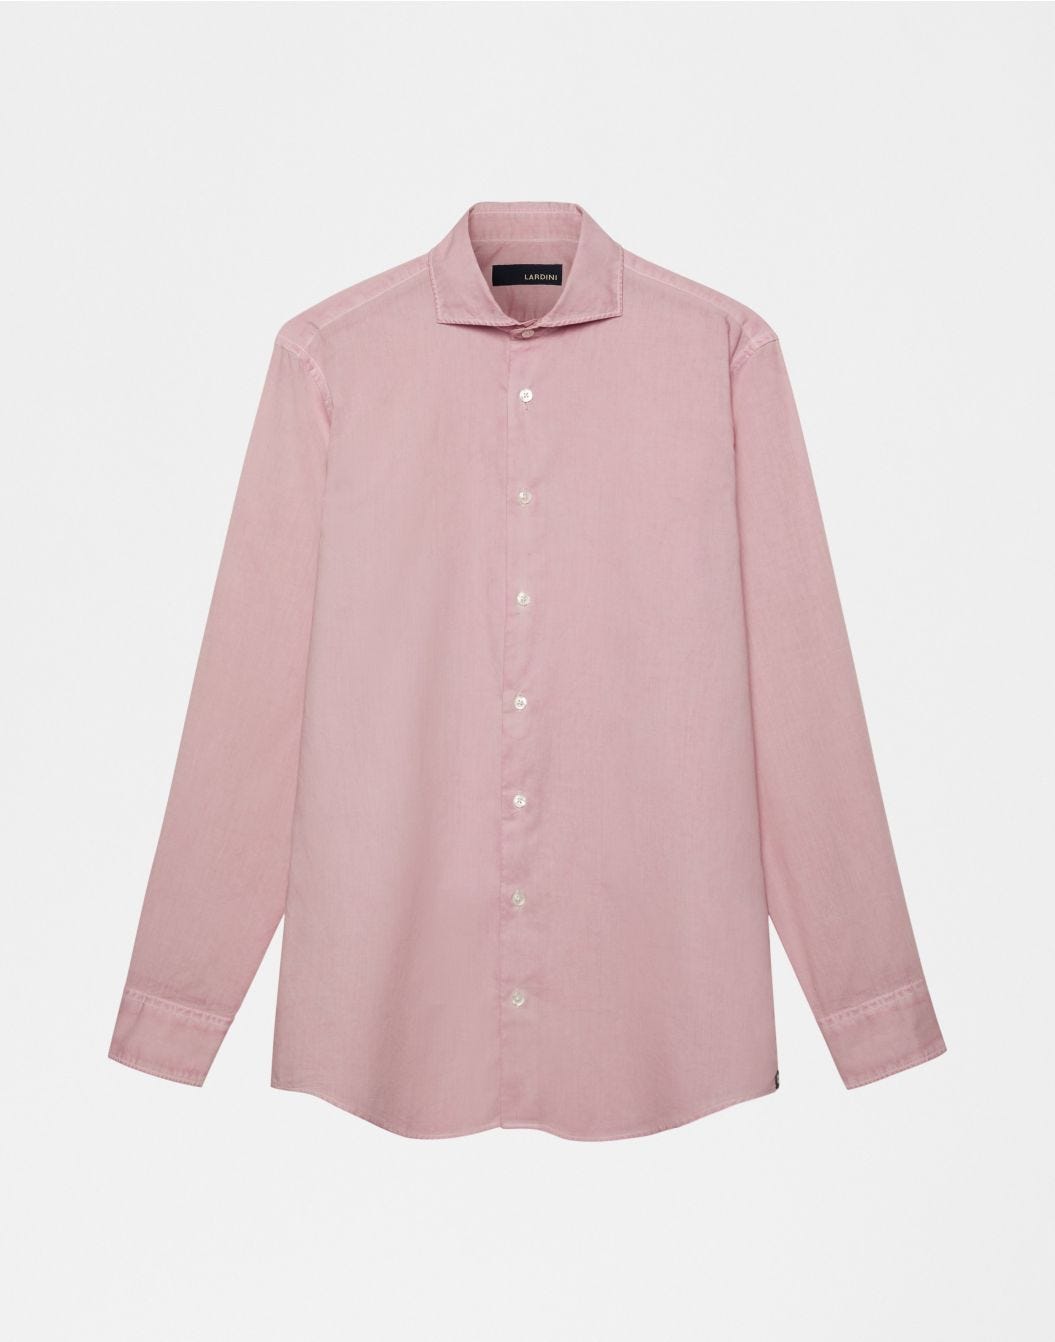 Pink spread collar shirt | Lardini